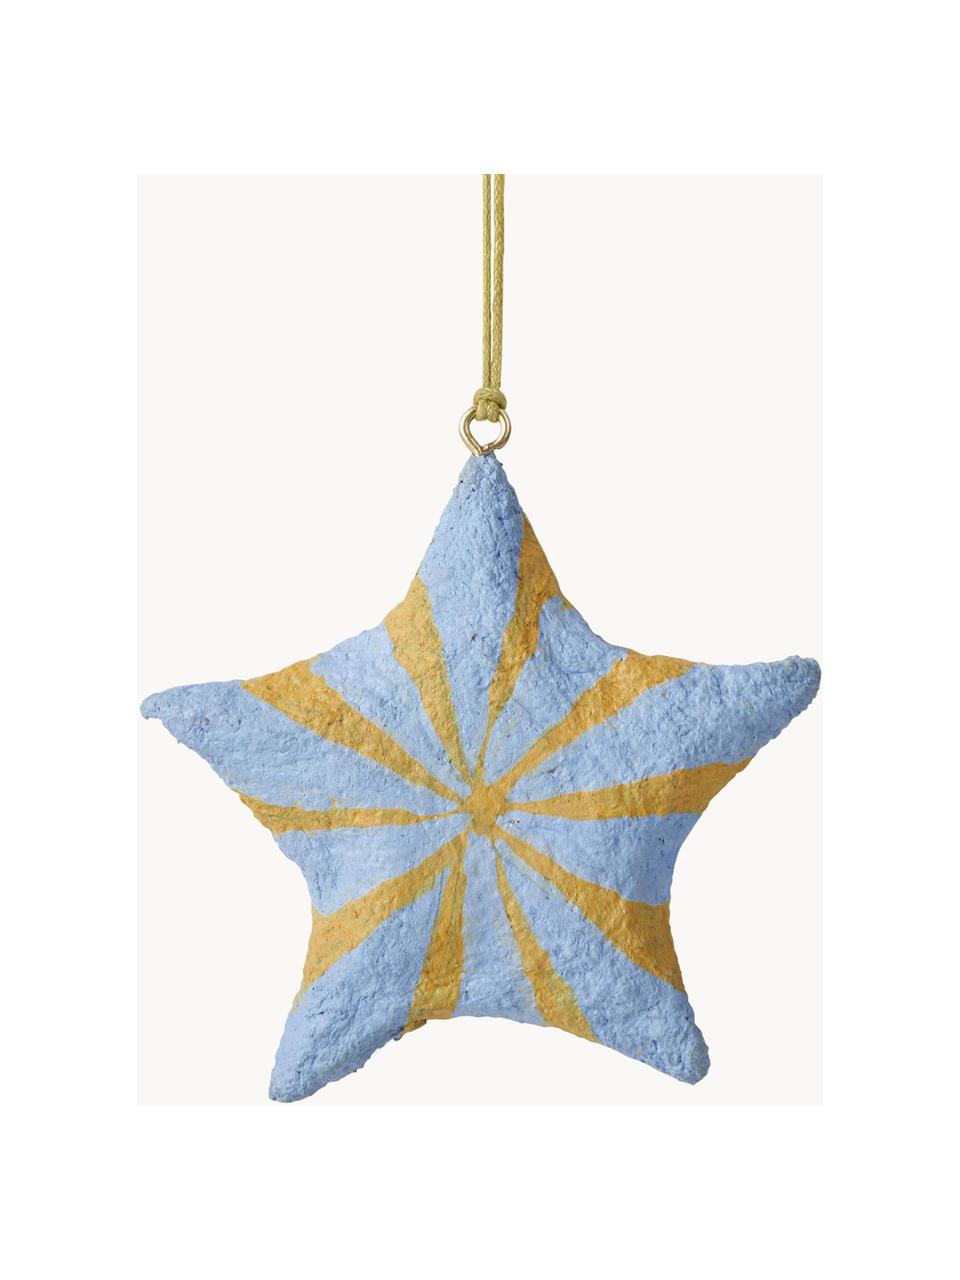 Ozdoby na vánoční stromeček ve tvaru hvězdy Bomuld, 4 ks, Bavlněná buničina, Modrá, žlutá, Ø 9 cm, V 9 cm